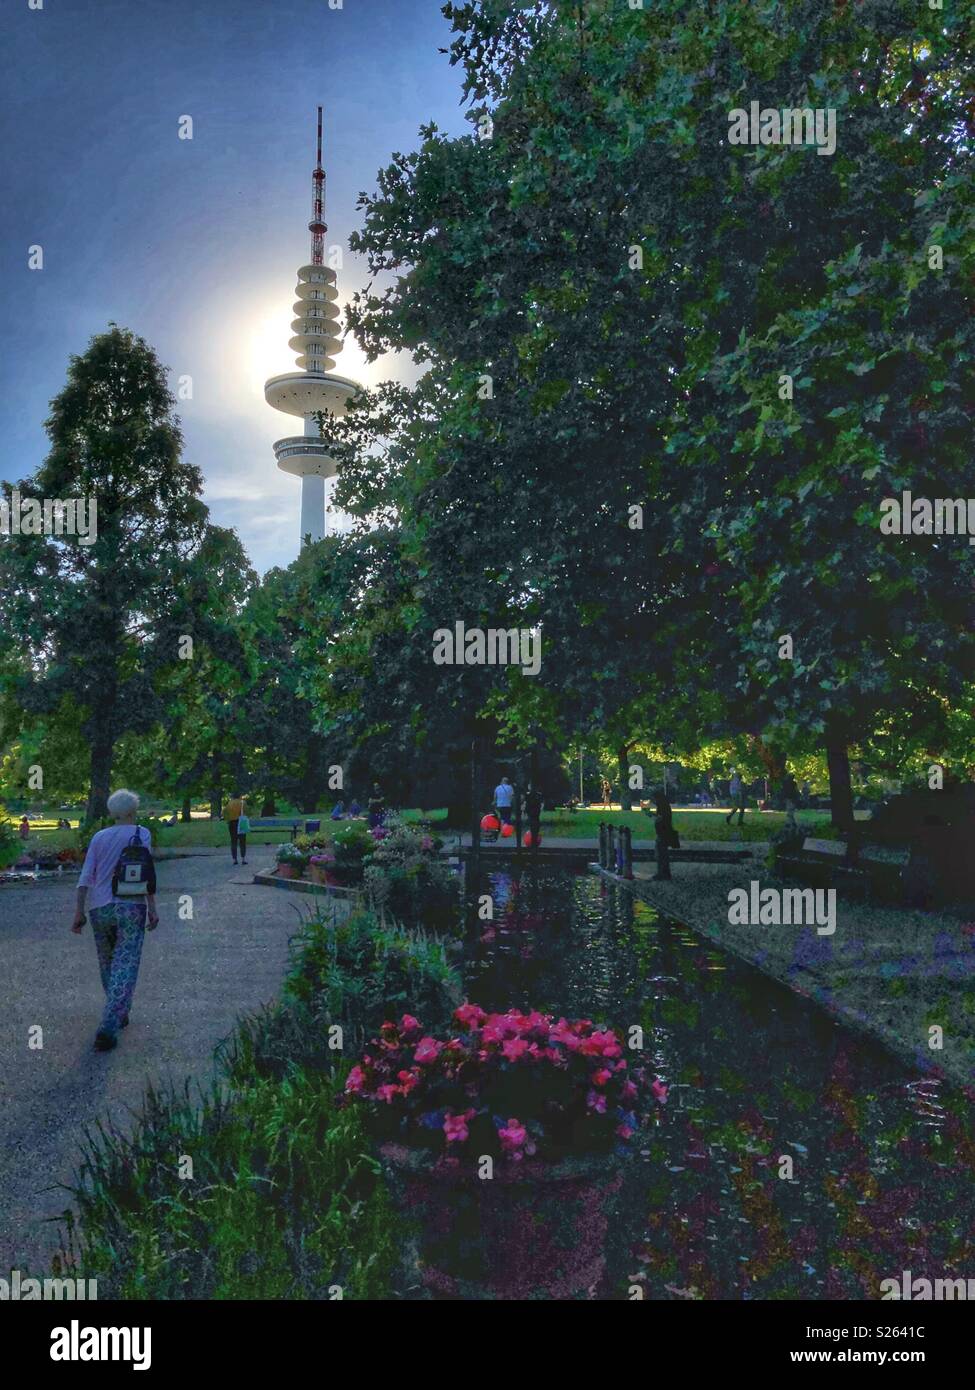 Parc Planten un Blomen, un parc de la ville de Hambourg en Allemagne. Banque D'Images